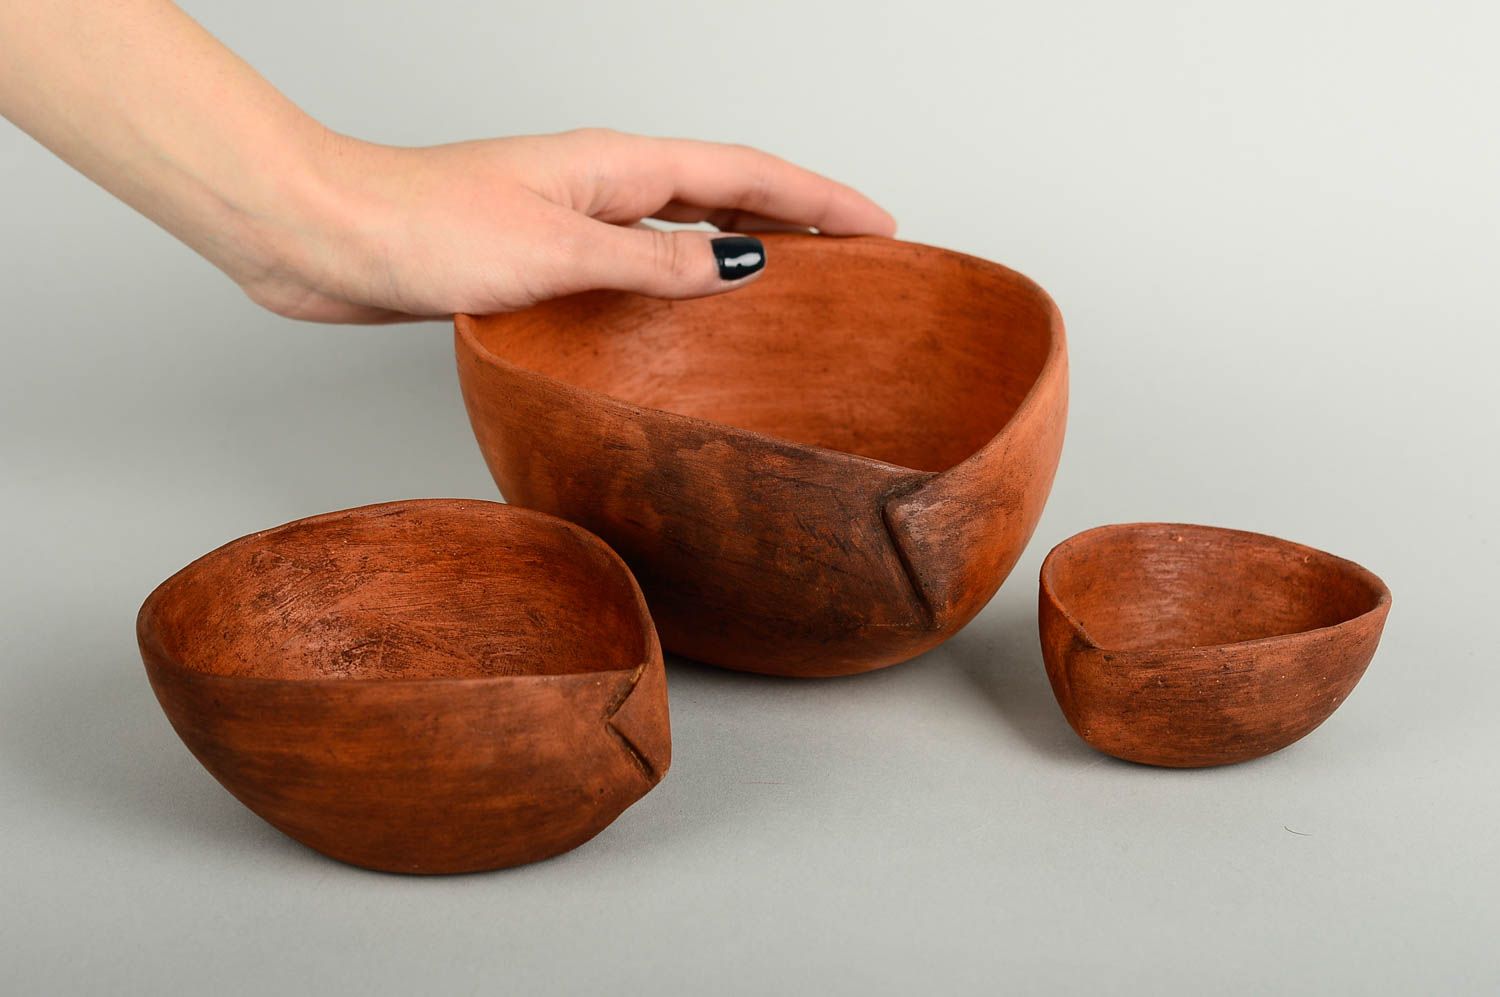 Handmade ceramic bowl 3 pieces home ceramics home goods table setting ideas photo 3